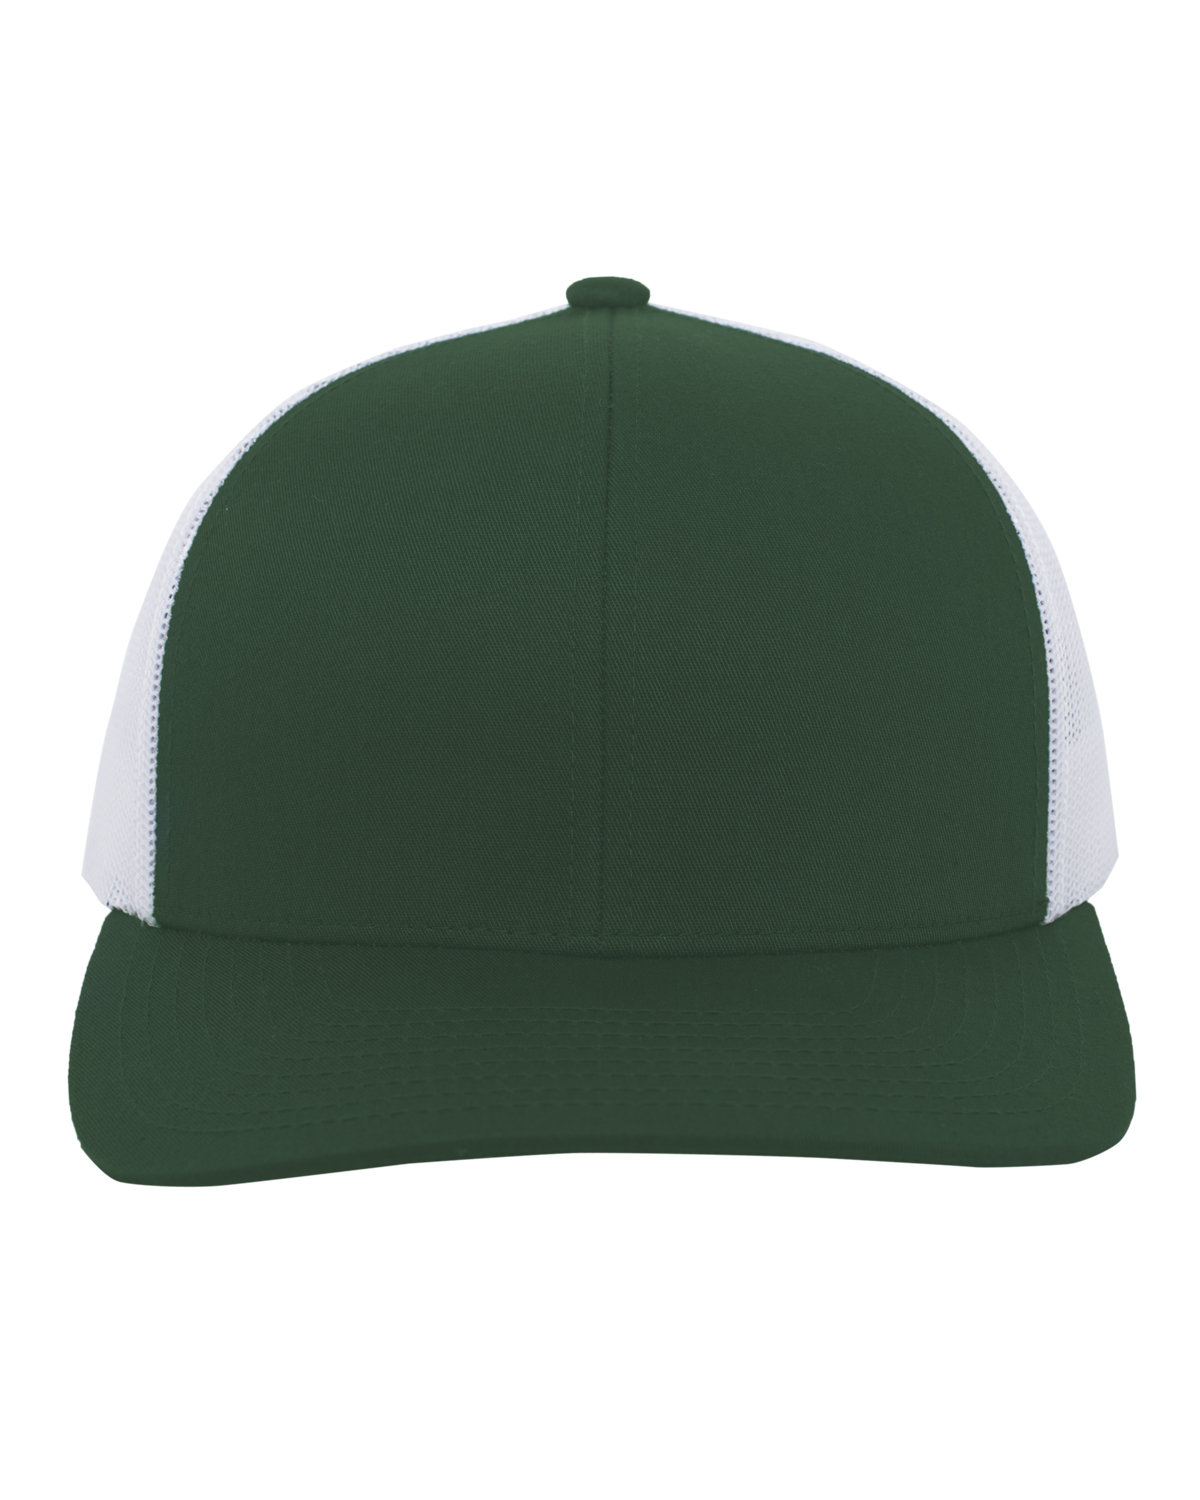 Pacific Headwear Trucker Snapback Hat DK GREEN/ WHT 